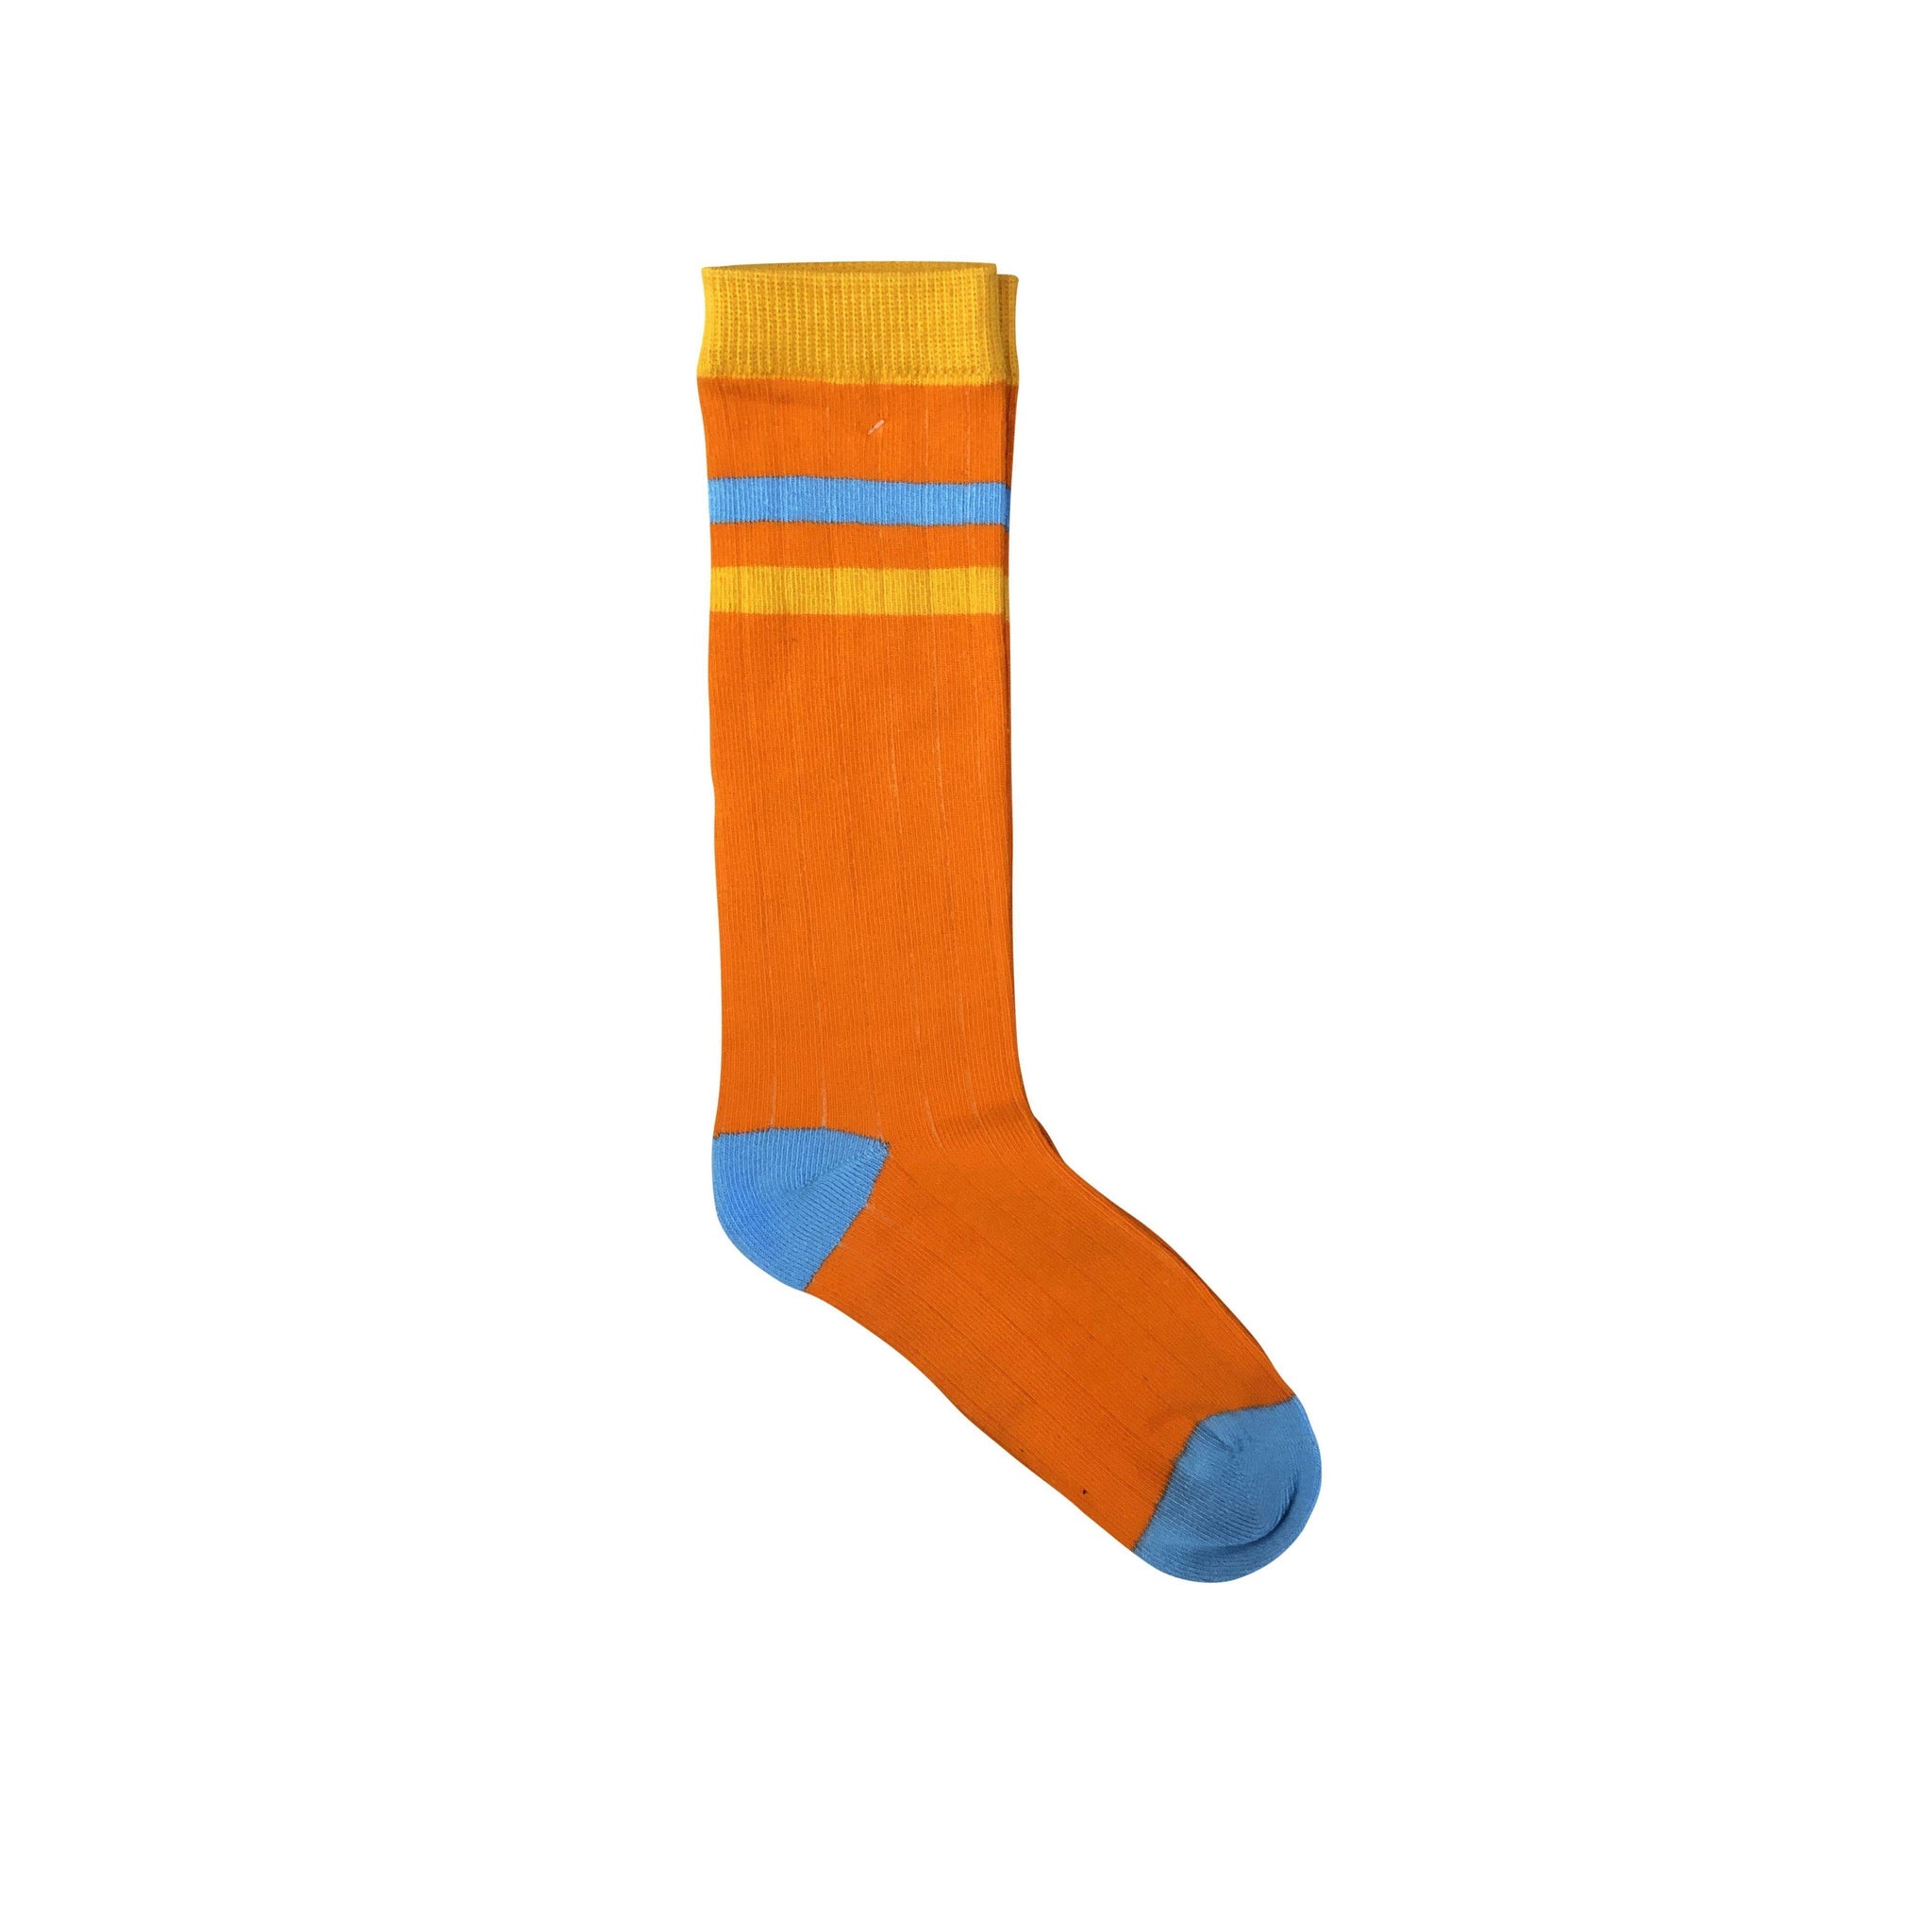 Moromini - Orange Ribbed Tube Socks